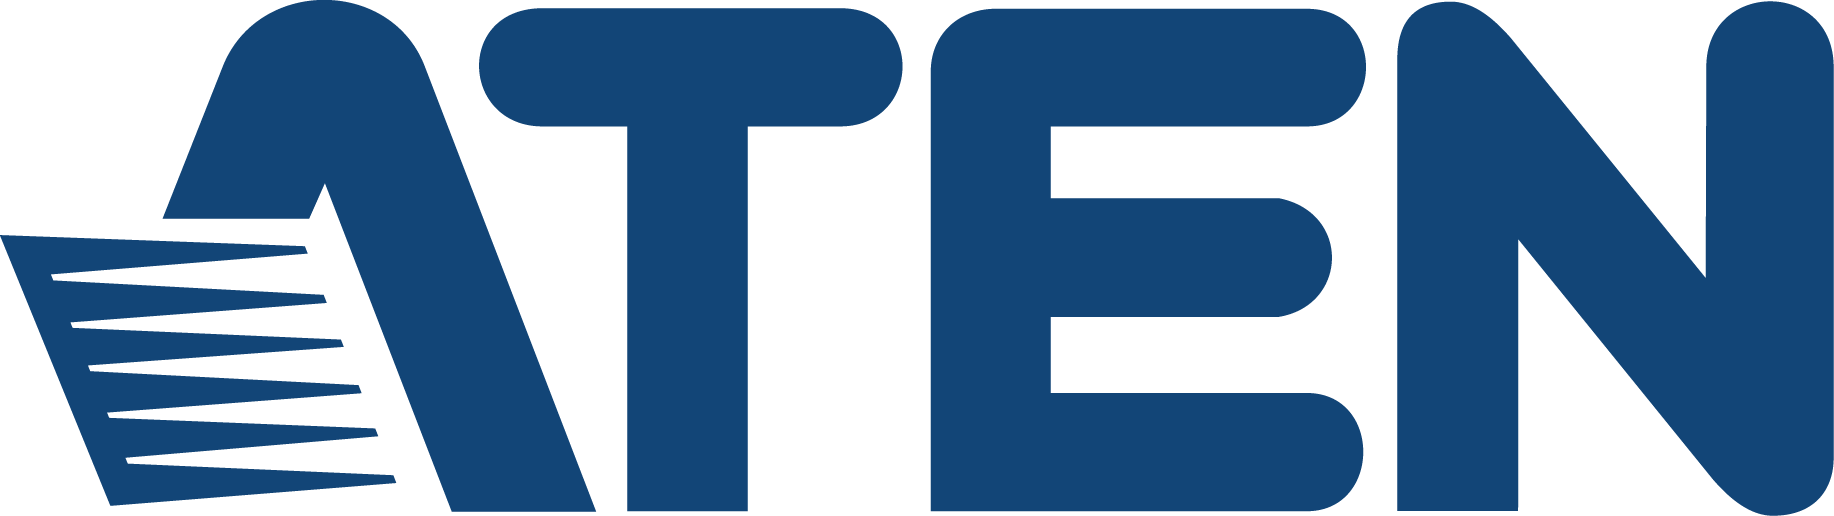 Логотип Aten